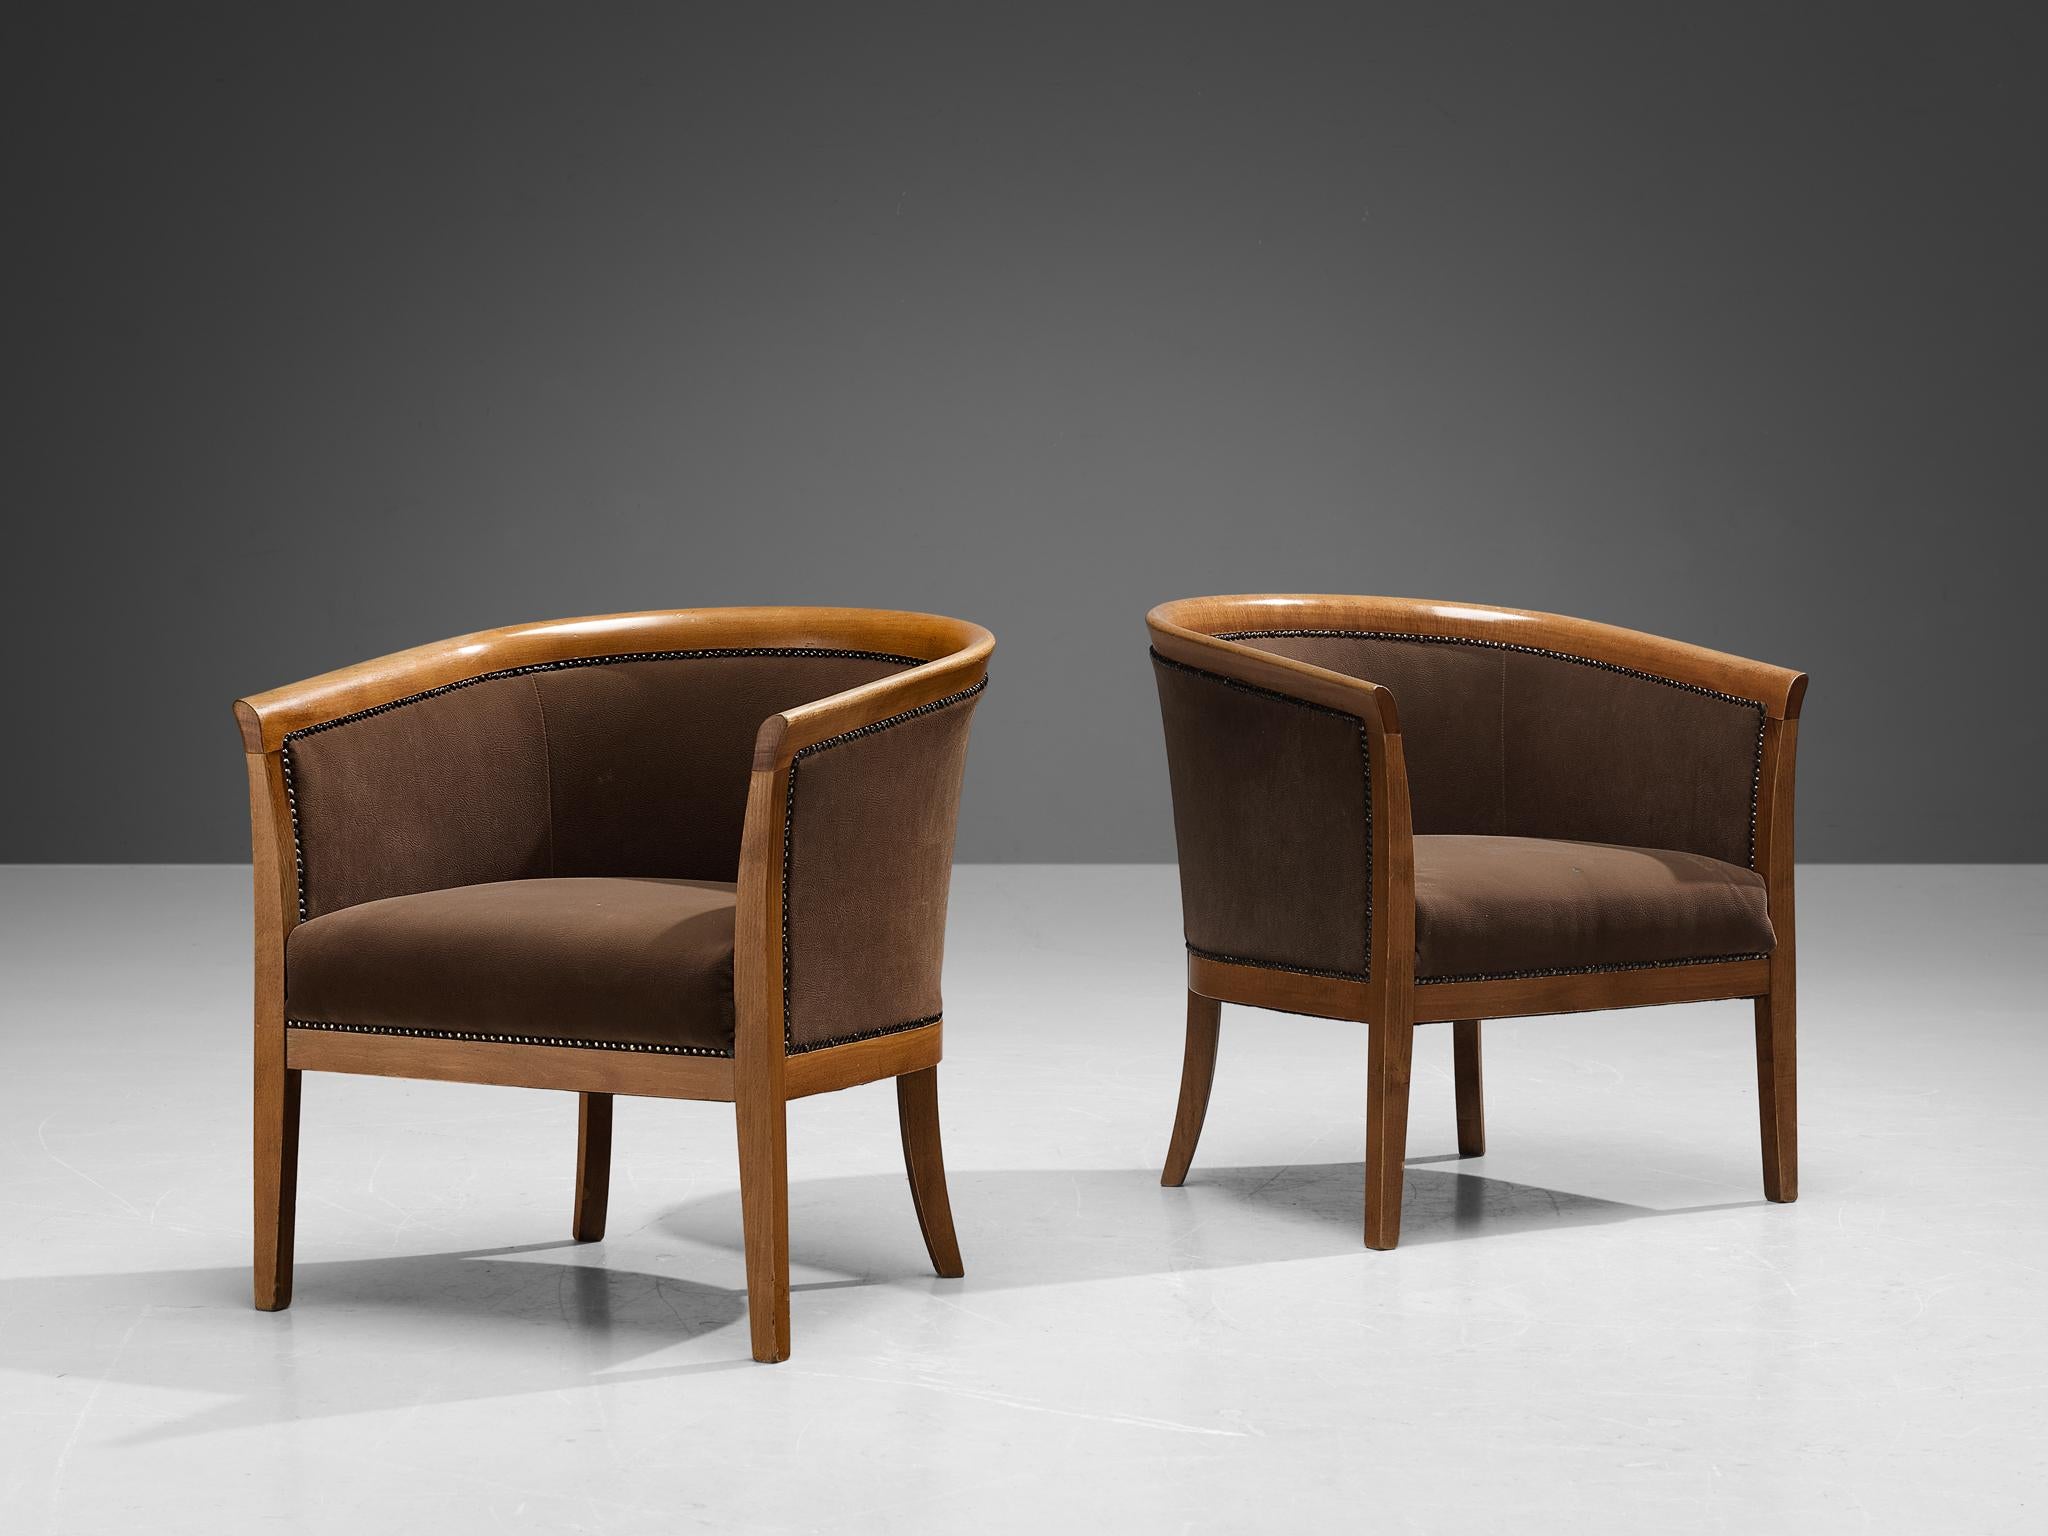 Paire de fauteuils club, tissu brun, hêtre, laiton, France, années 1940.

Ces fauteuils à la sculpture classique présentent des assises conçues comme une coquille, qui embrasse merveilleusement l'assis. Les lignes courbes du cadre sont encore